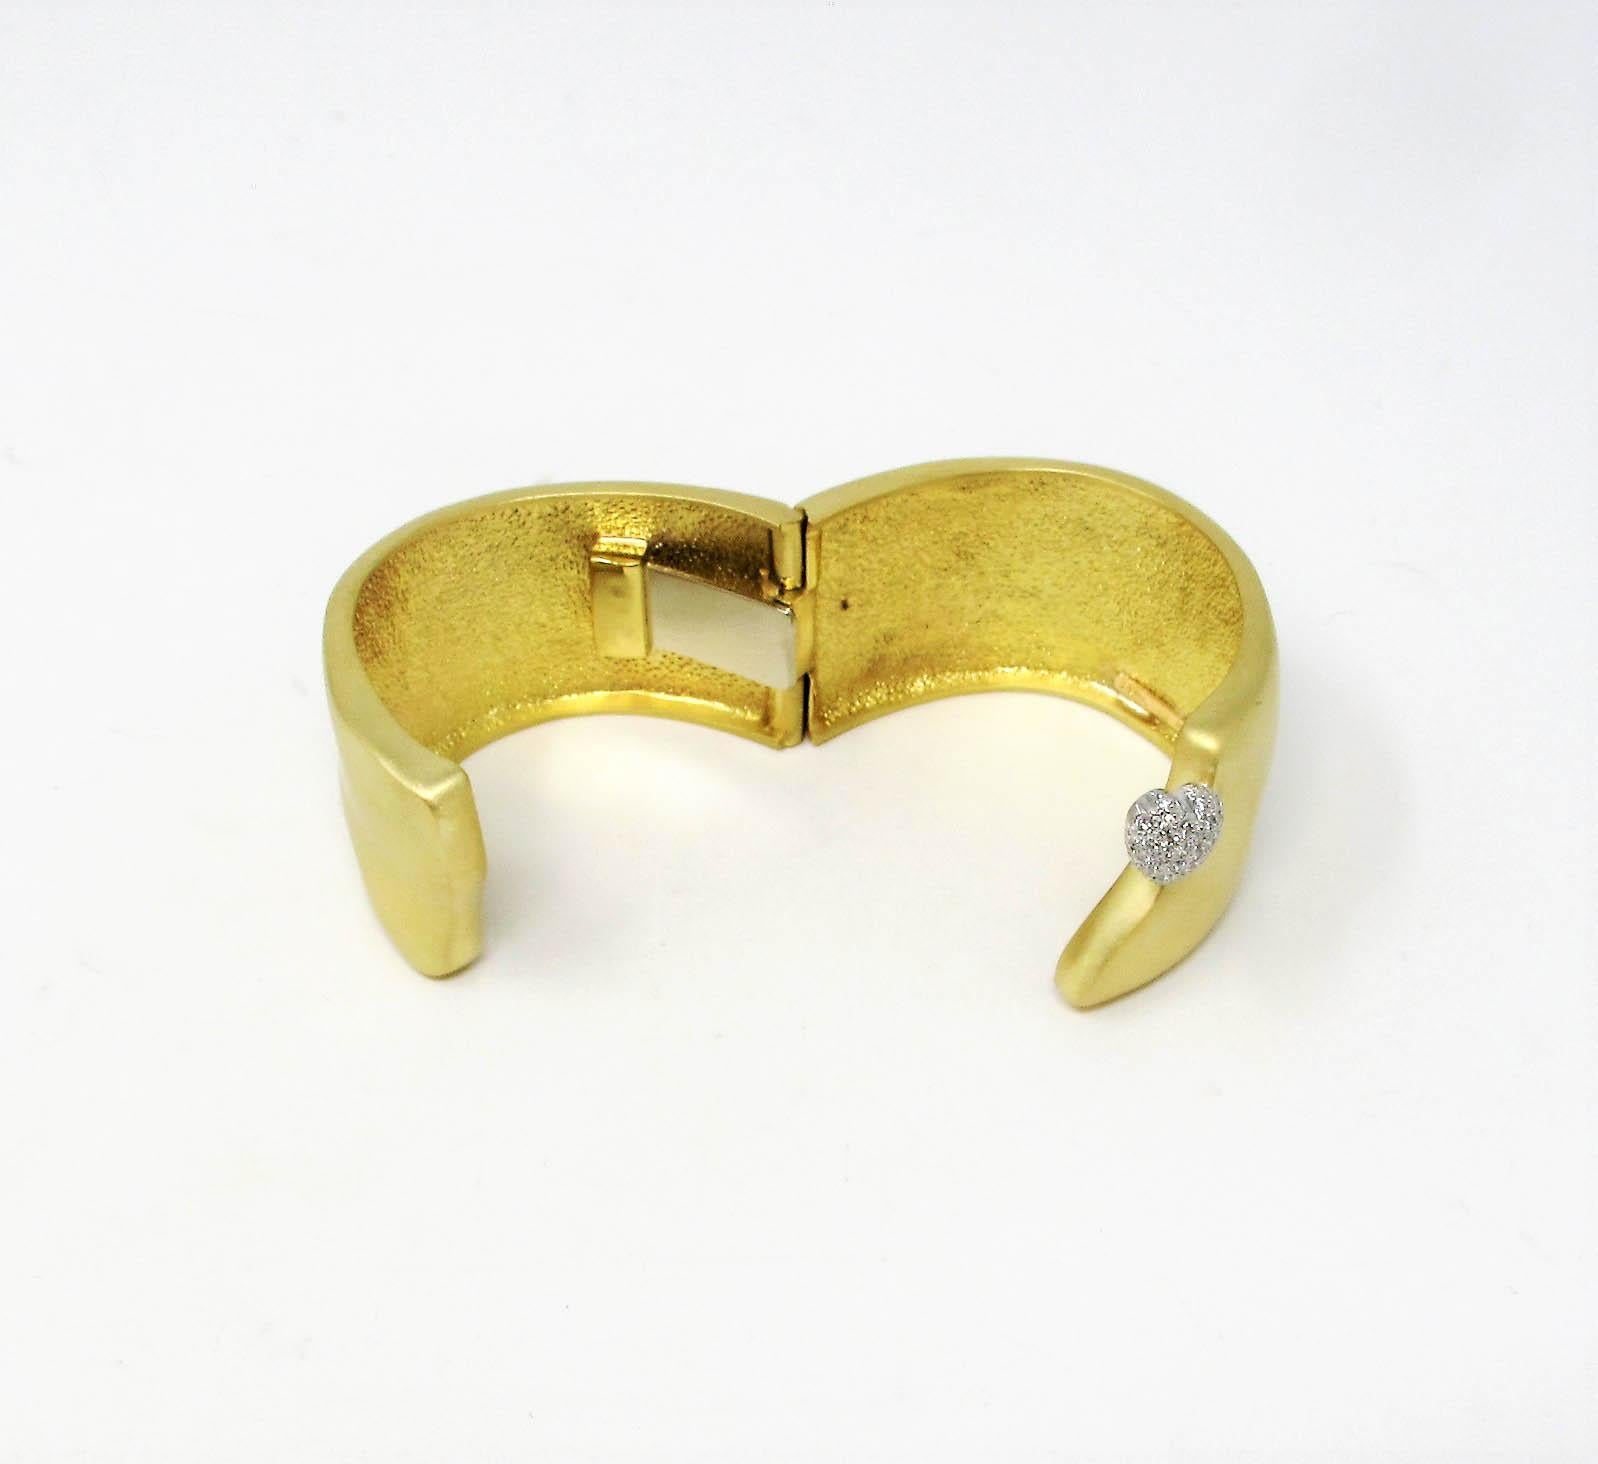 Marlene Stowe Diamond Heart Wide Hinged Cuff Bracelet in 18 Karat Yellow Gold 1